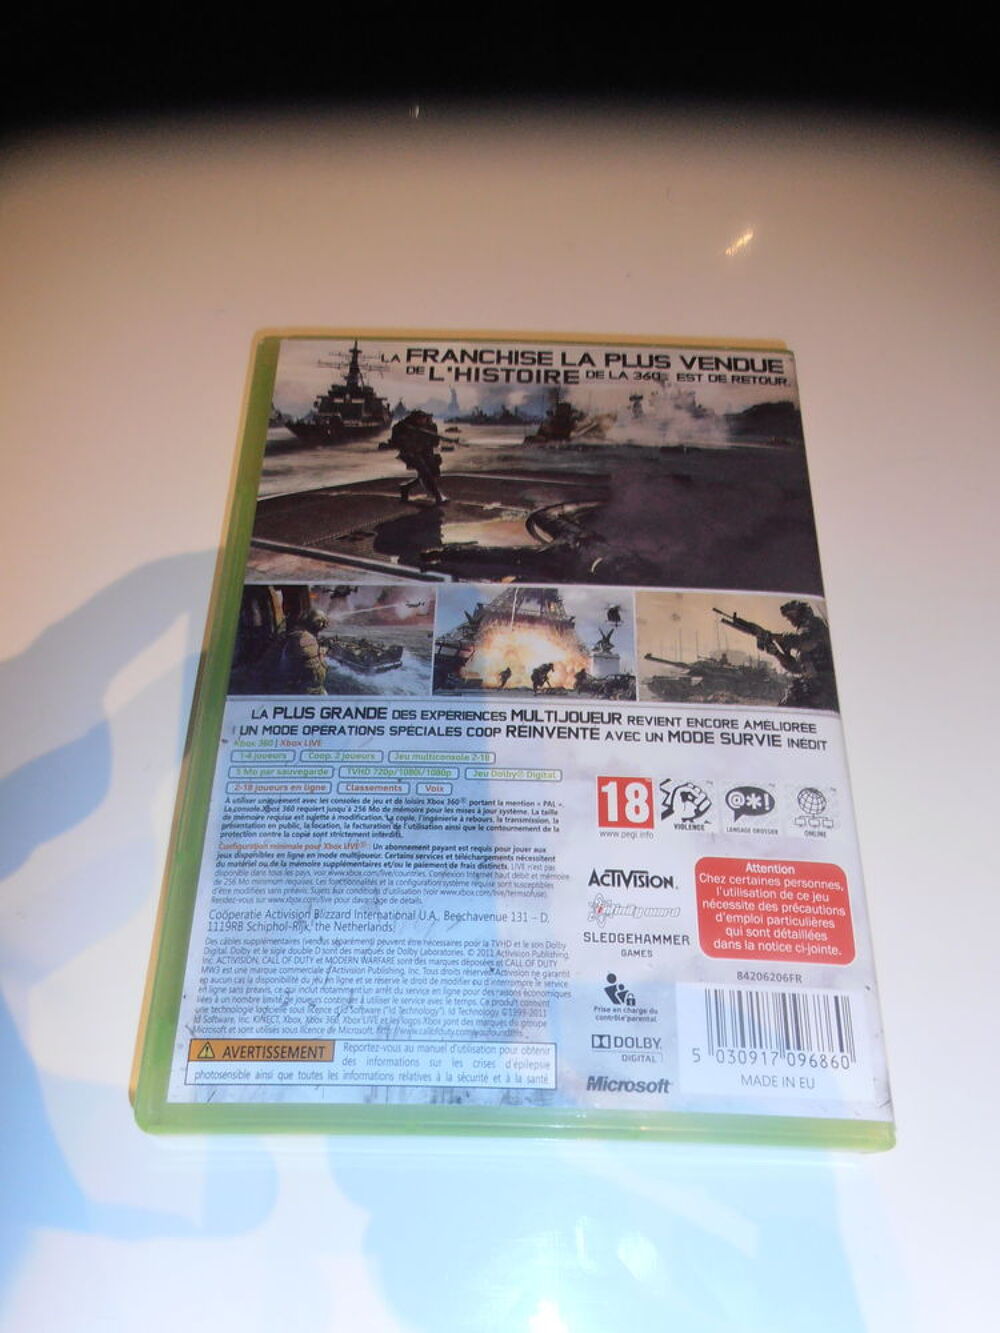 Jeu XBOS 360 - Call Of Duty MW3 (26) Consoles et jeux vidos